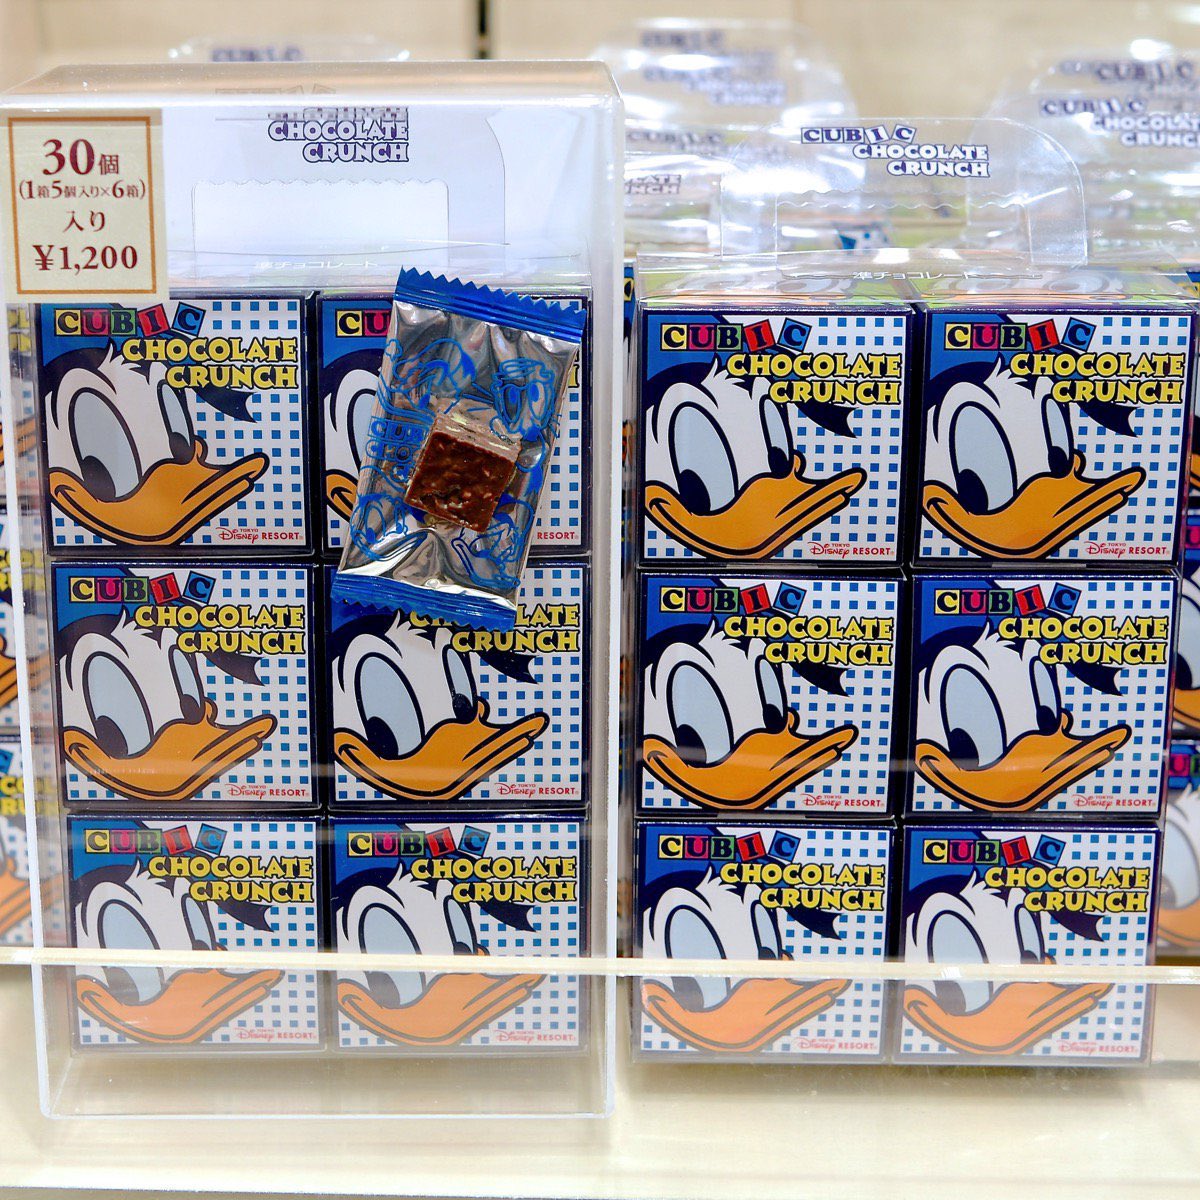 Mezzomikiのディズニーブログ 東京ディズニーリゾート レギュラーお菓子のお土産 ドナルド のキュービックチョコレートクランチ くまのプーさんのキャンディー ミッキー ミニーのおせんべい 本日新発売 詳しくは T Co H3h6neeo64